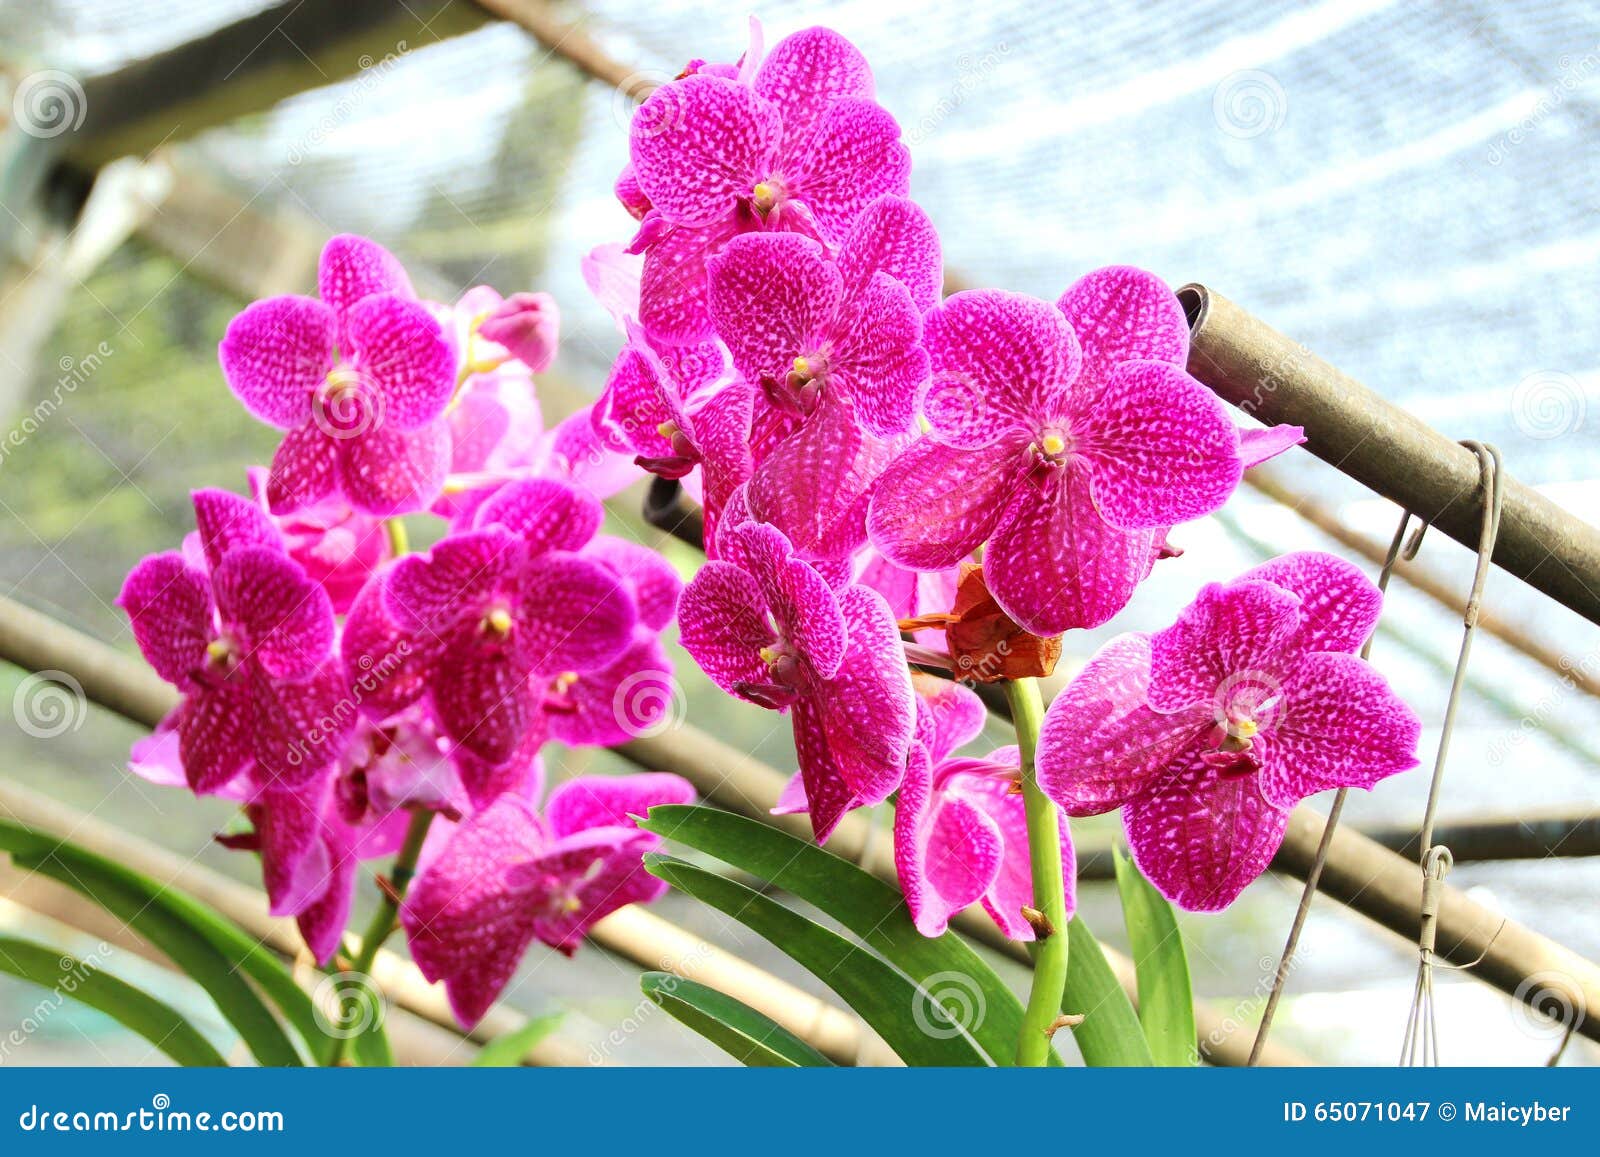 Orquídea tailandesa imagen de archivo. Imagen de flora - 65071047